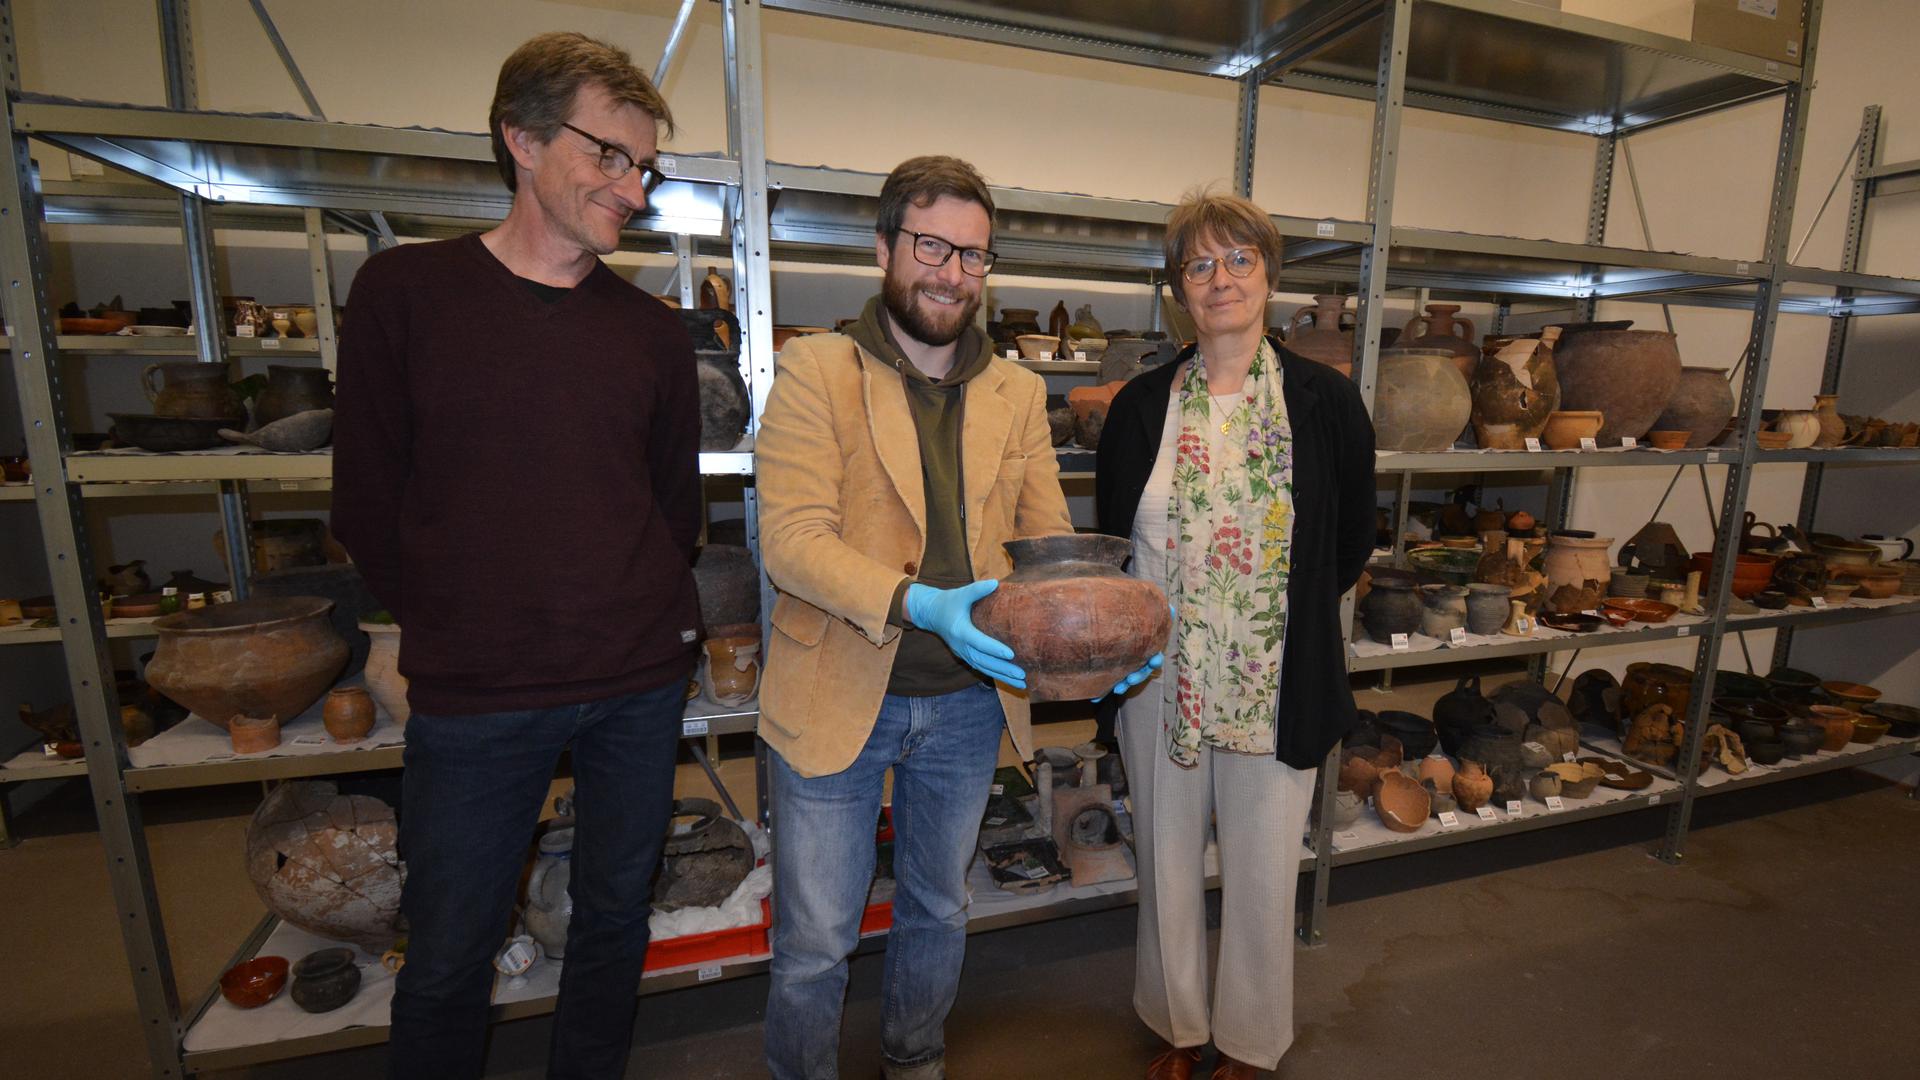 Martin Kemkes, Johann Schrempp und Iris Baumgärtner. Schrempp hält ein keltisches Gefäß aus dem 6. Jahrhundert vor Christus in den Händen, ausgegraben in Breisach bei Freiburg.